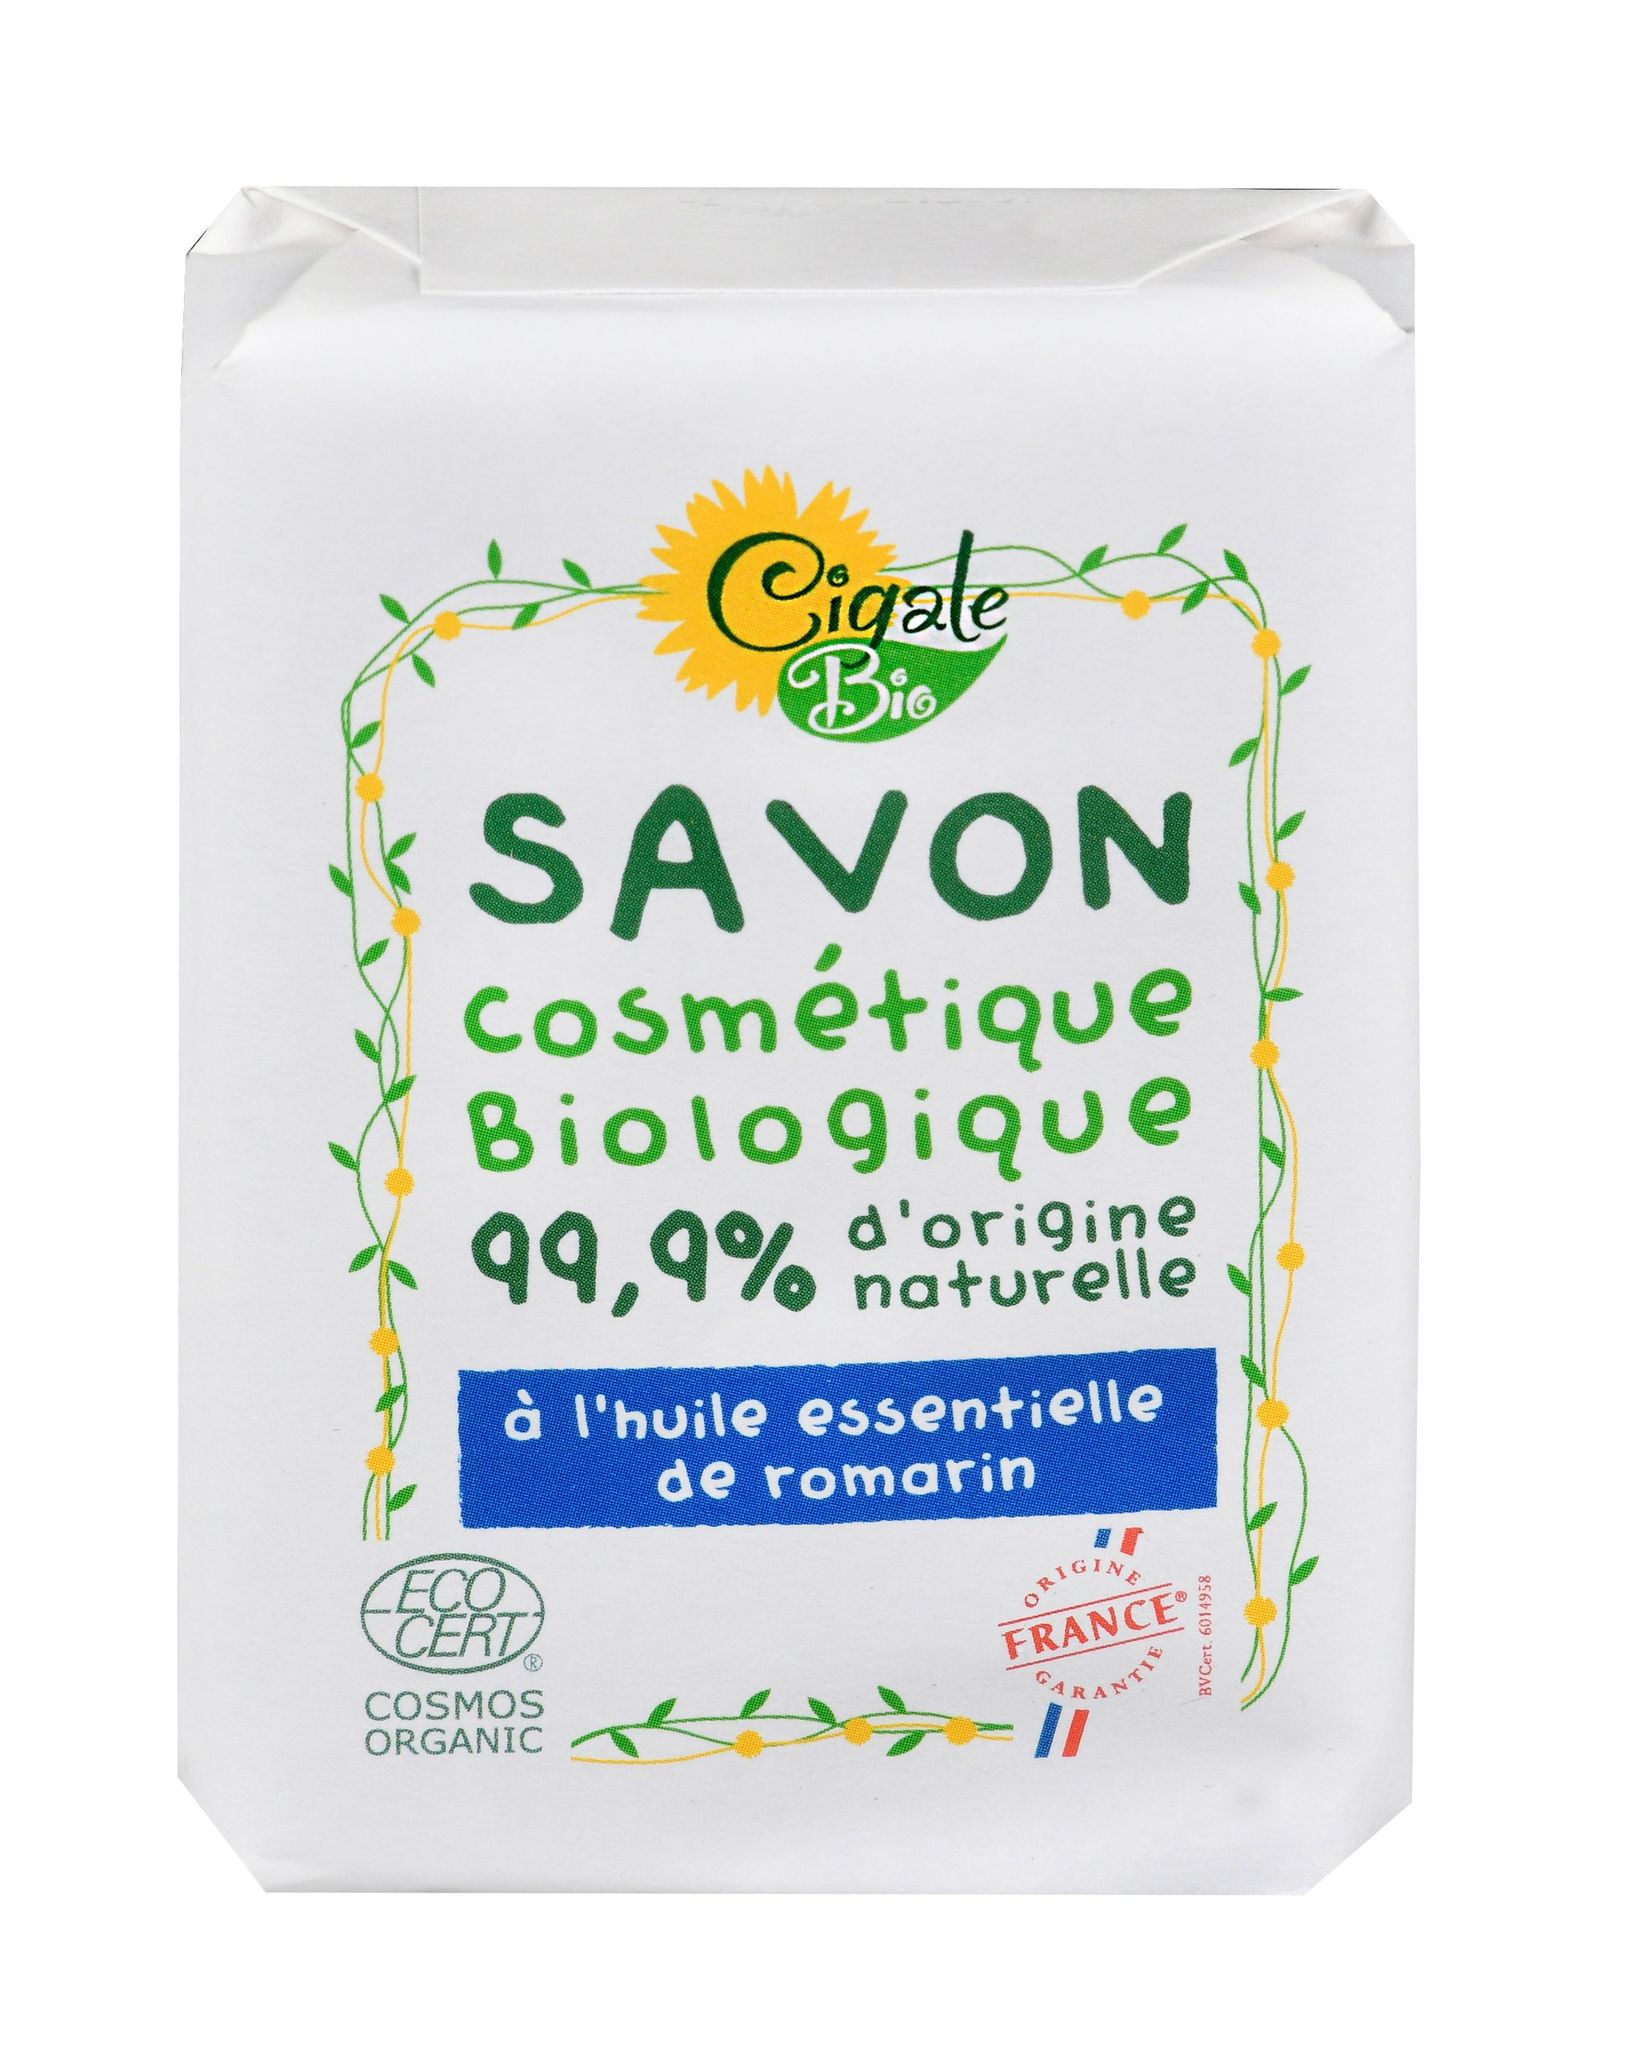 Мыло твердое с маслом Розмарина органическое 100 г CIGALE BIO (Франция) мыло бизорюк фабрика здоровья для чувствительной кожи 100 г